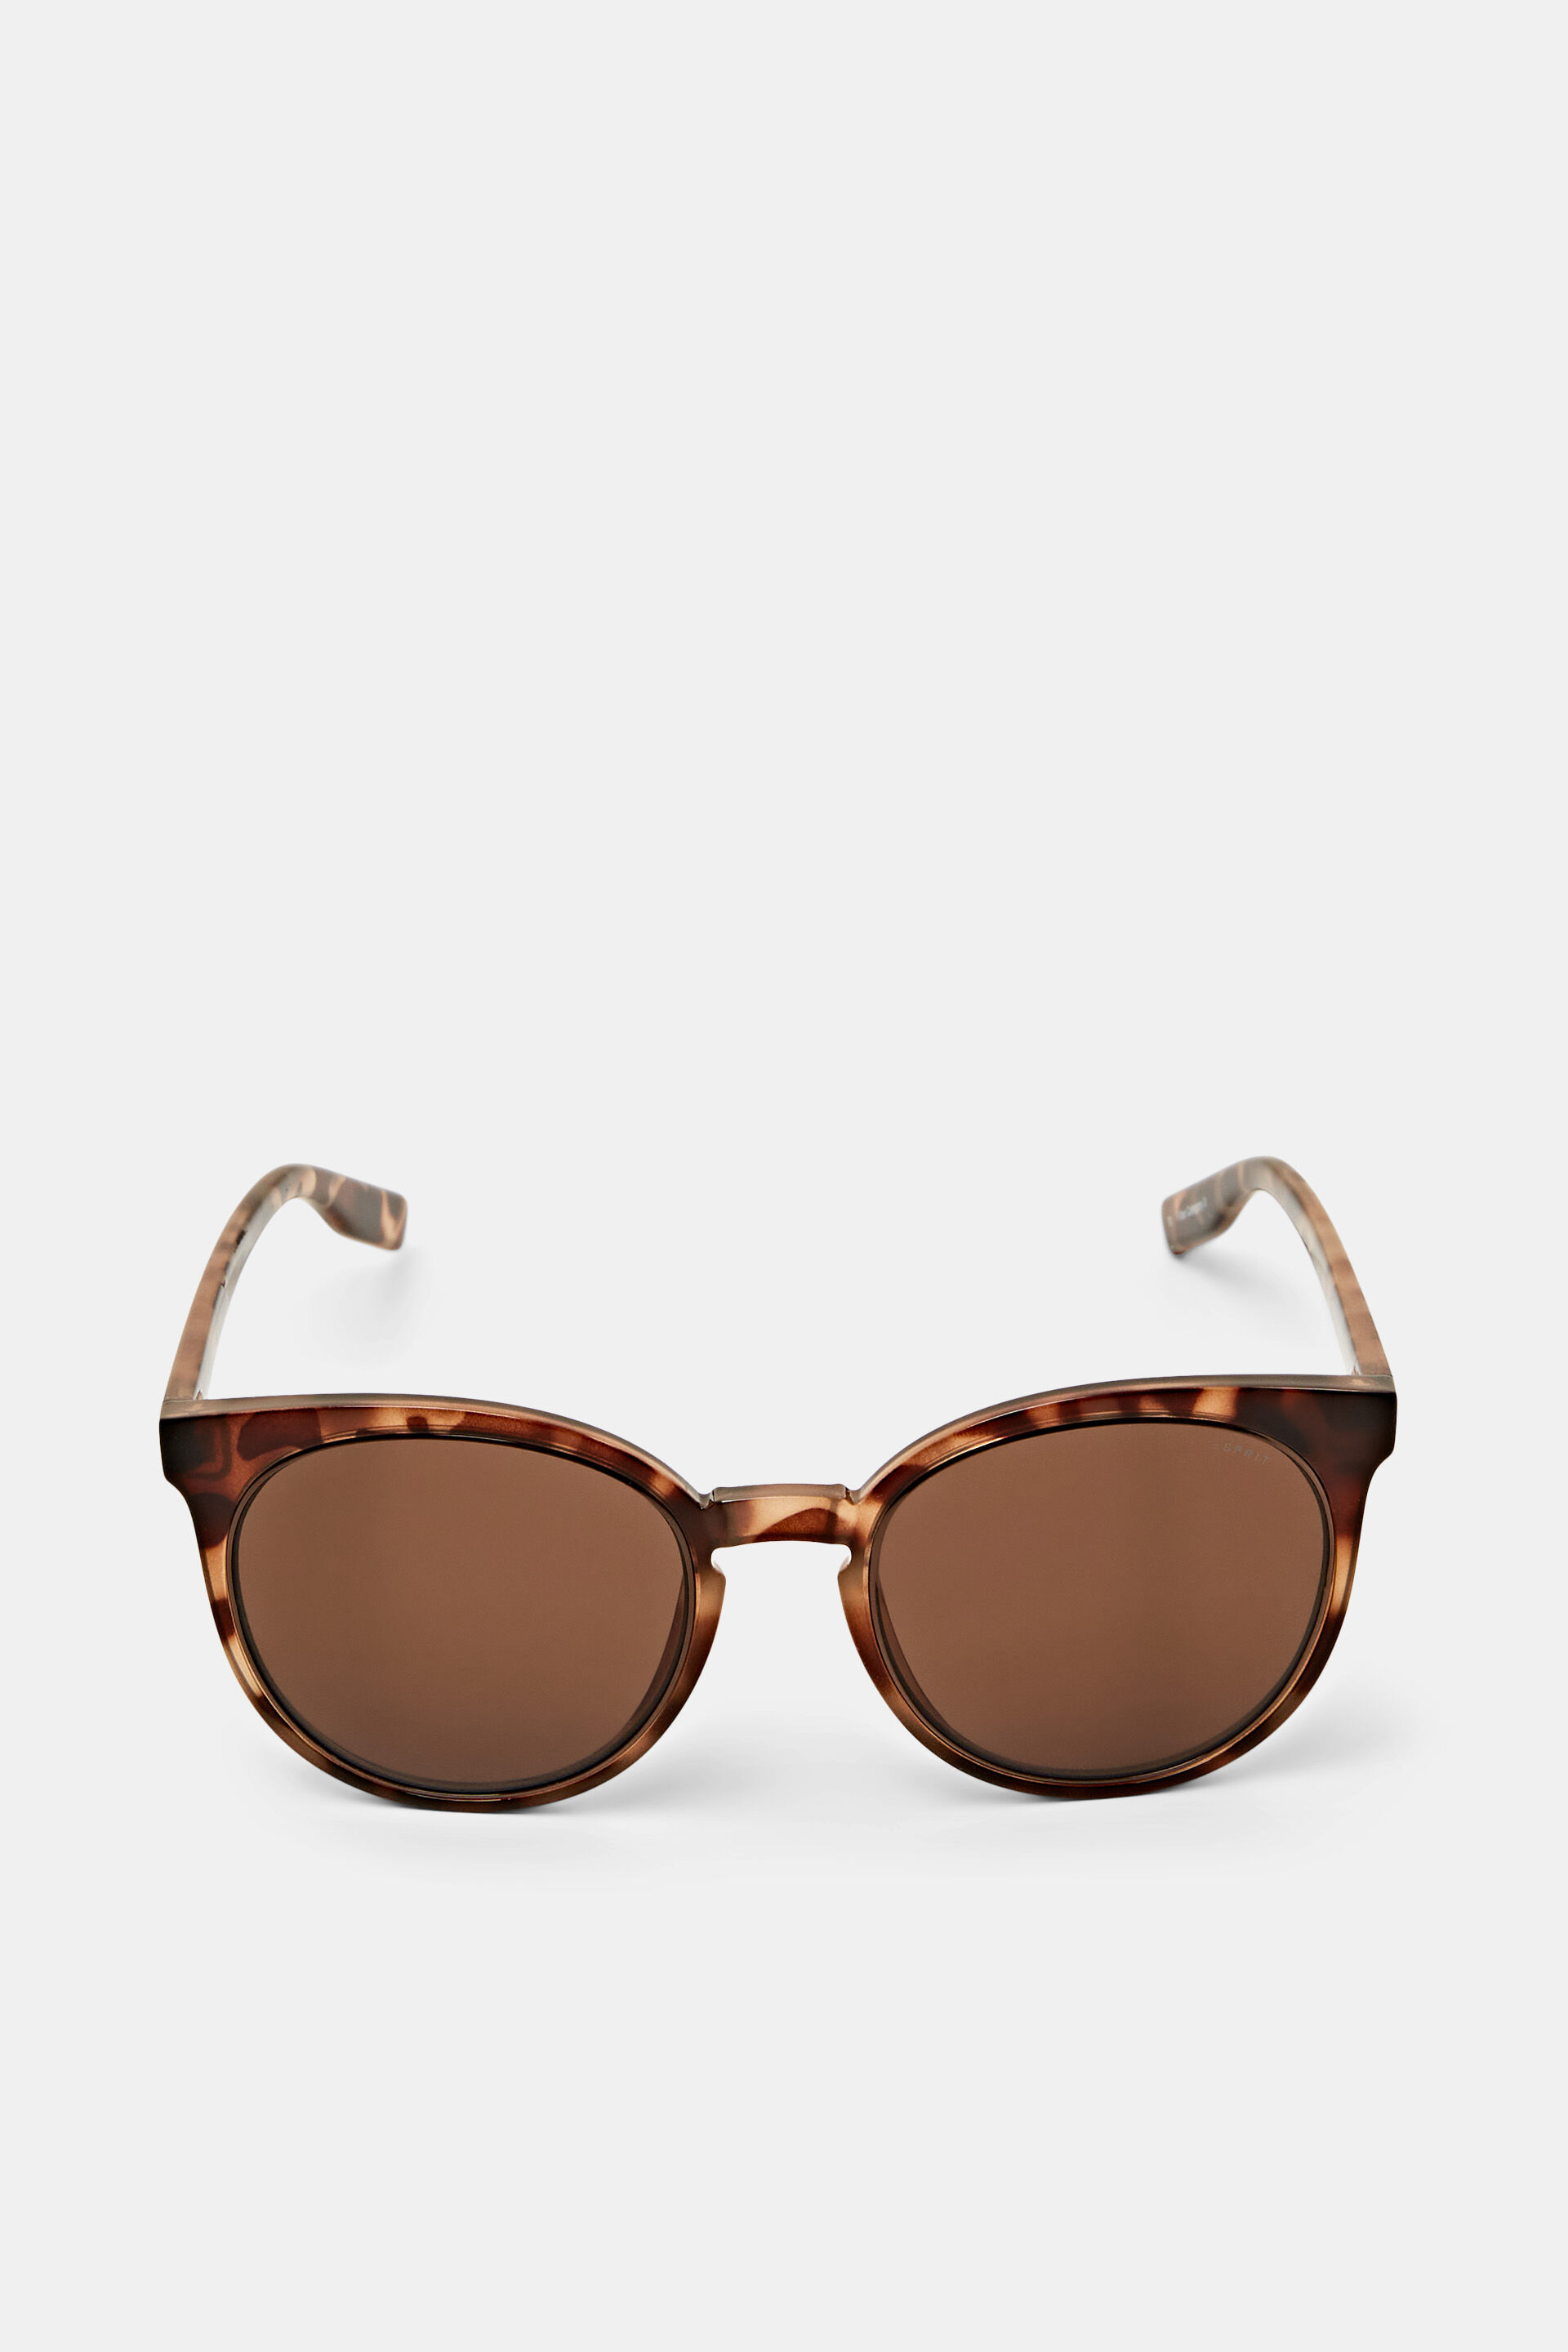 Esprit framed Round sunglasses statement